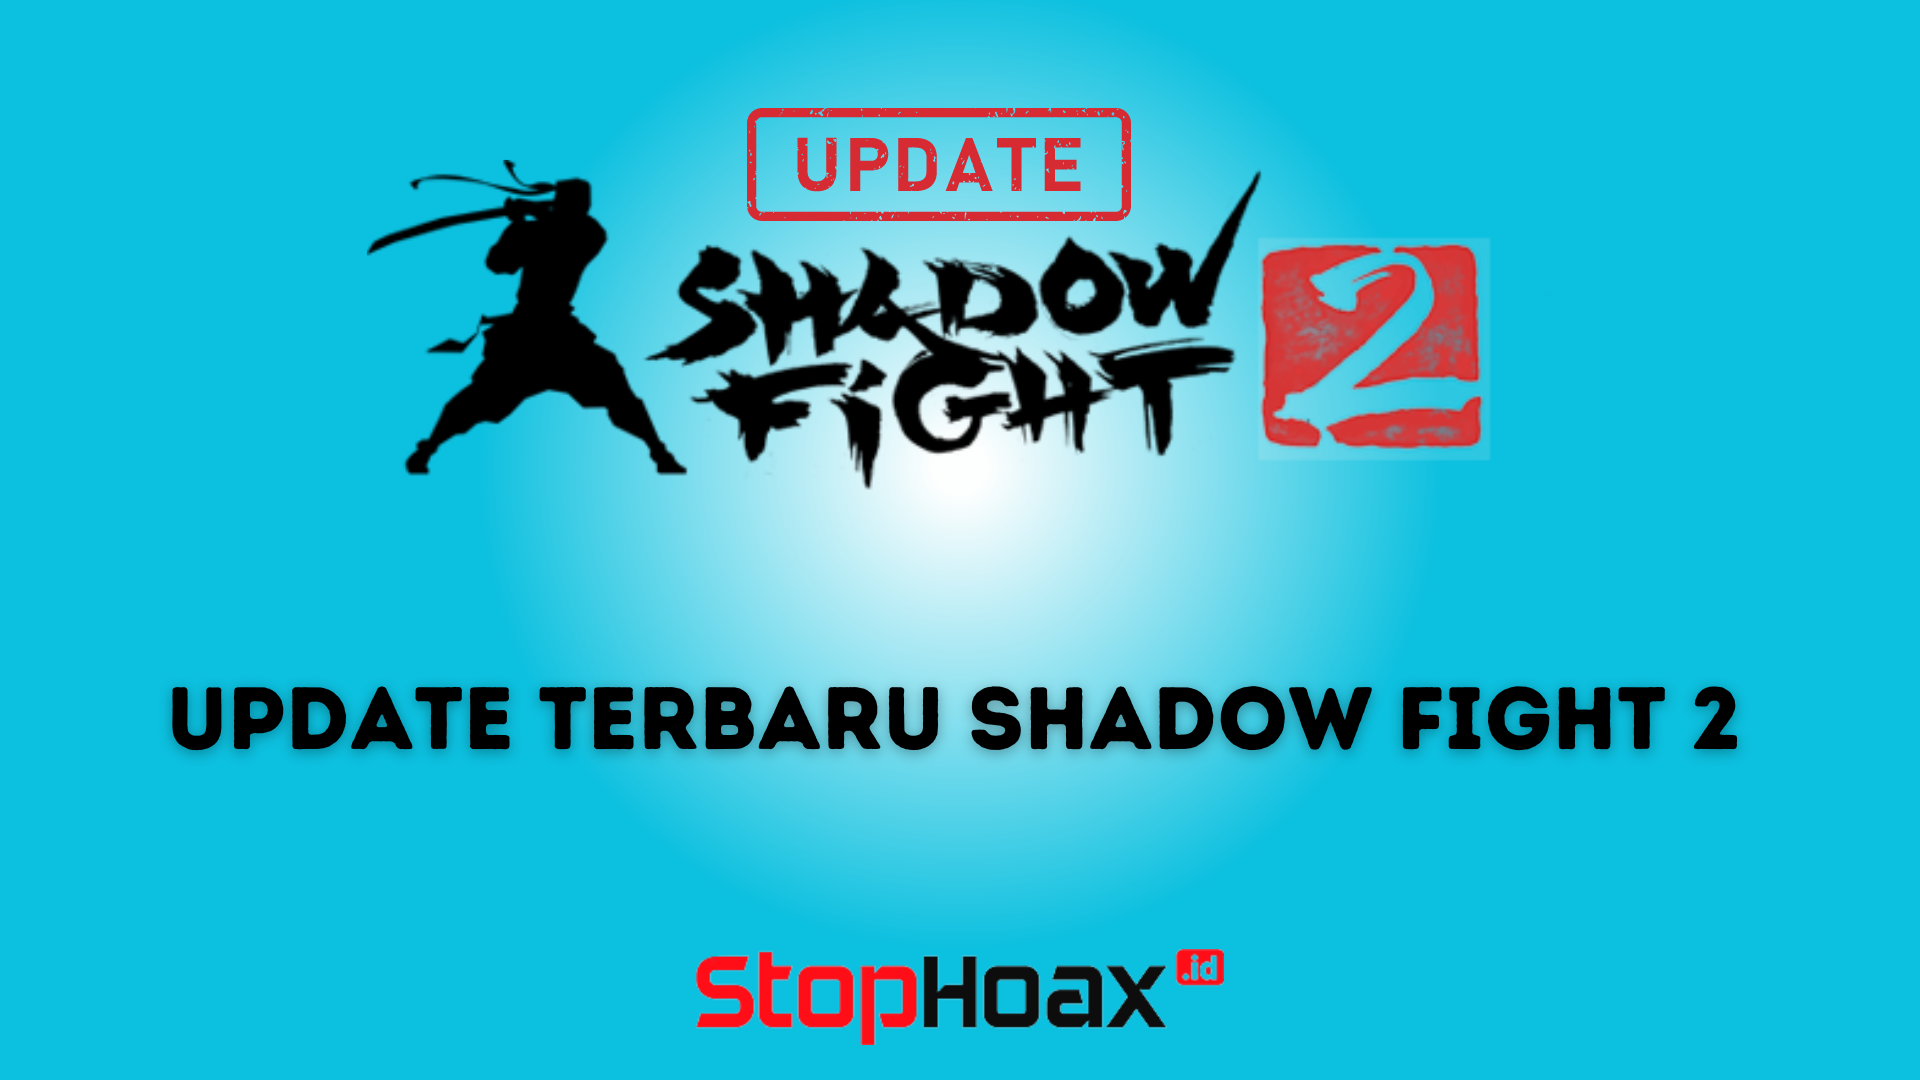 Update Terbaru Shadow Fight 2 Special Edition Fitur Baru dan Perubahan Gameplay yang Menarik